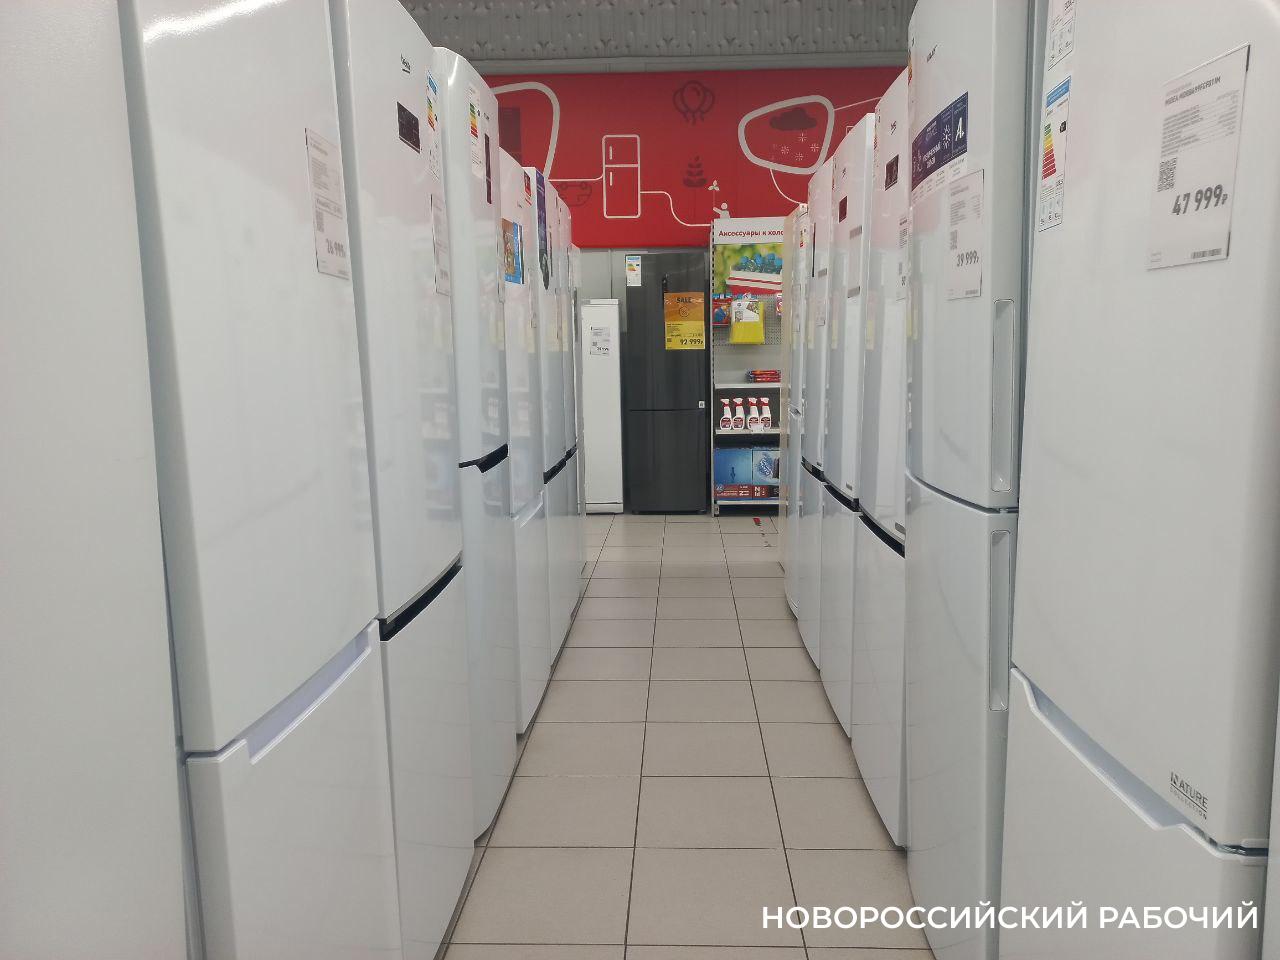 В магазинах Новороссийска в придачу к холодильникам и телевизорам предлагают кредитные карты  